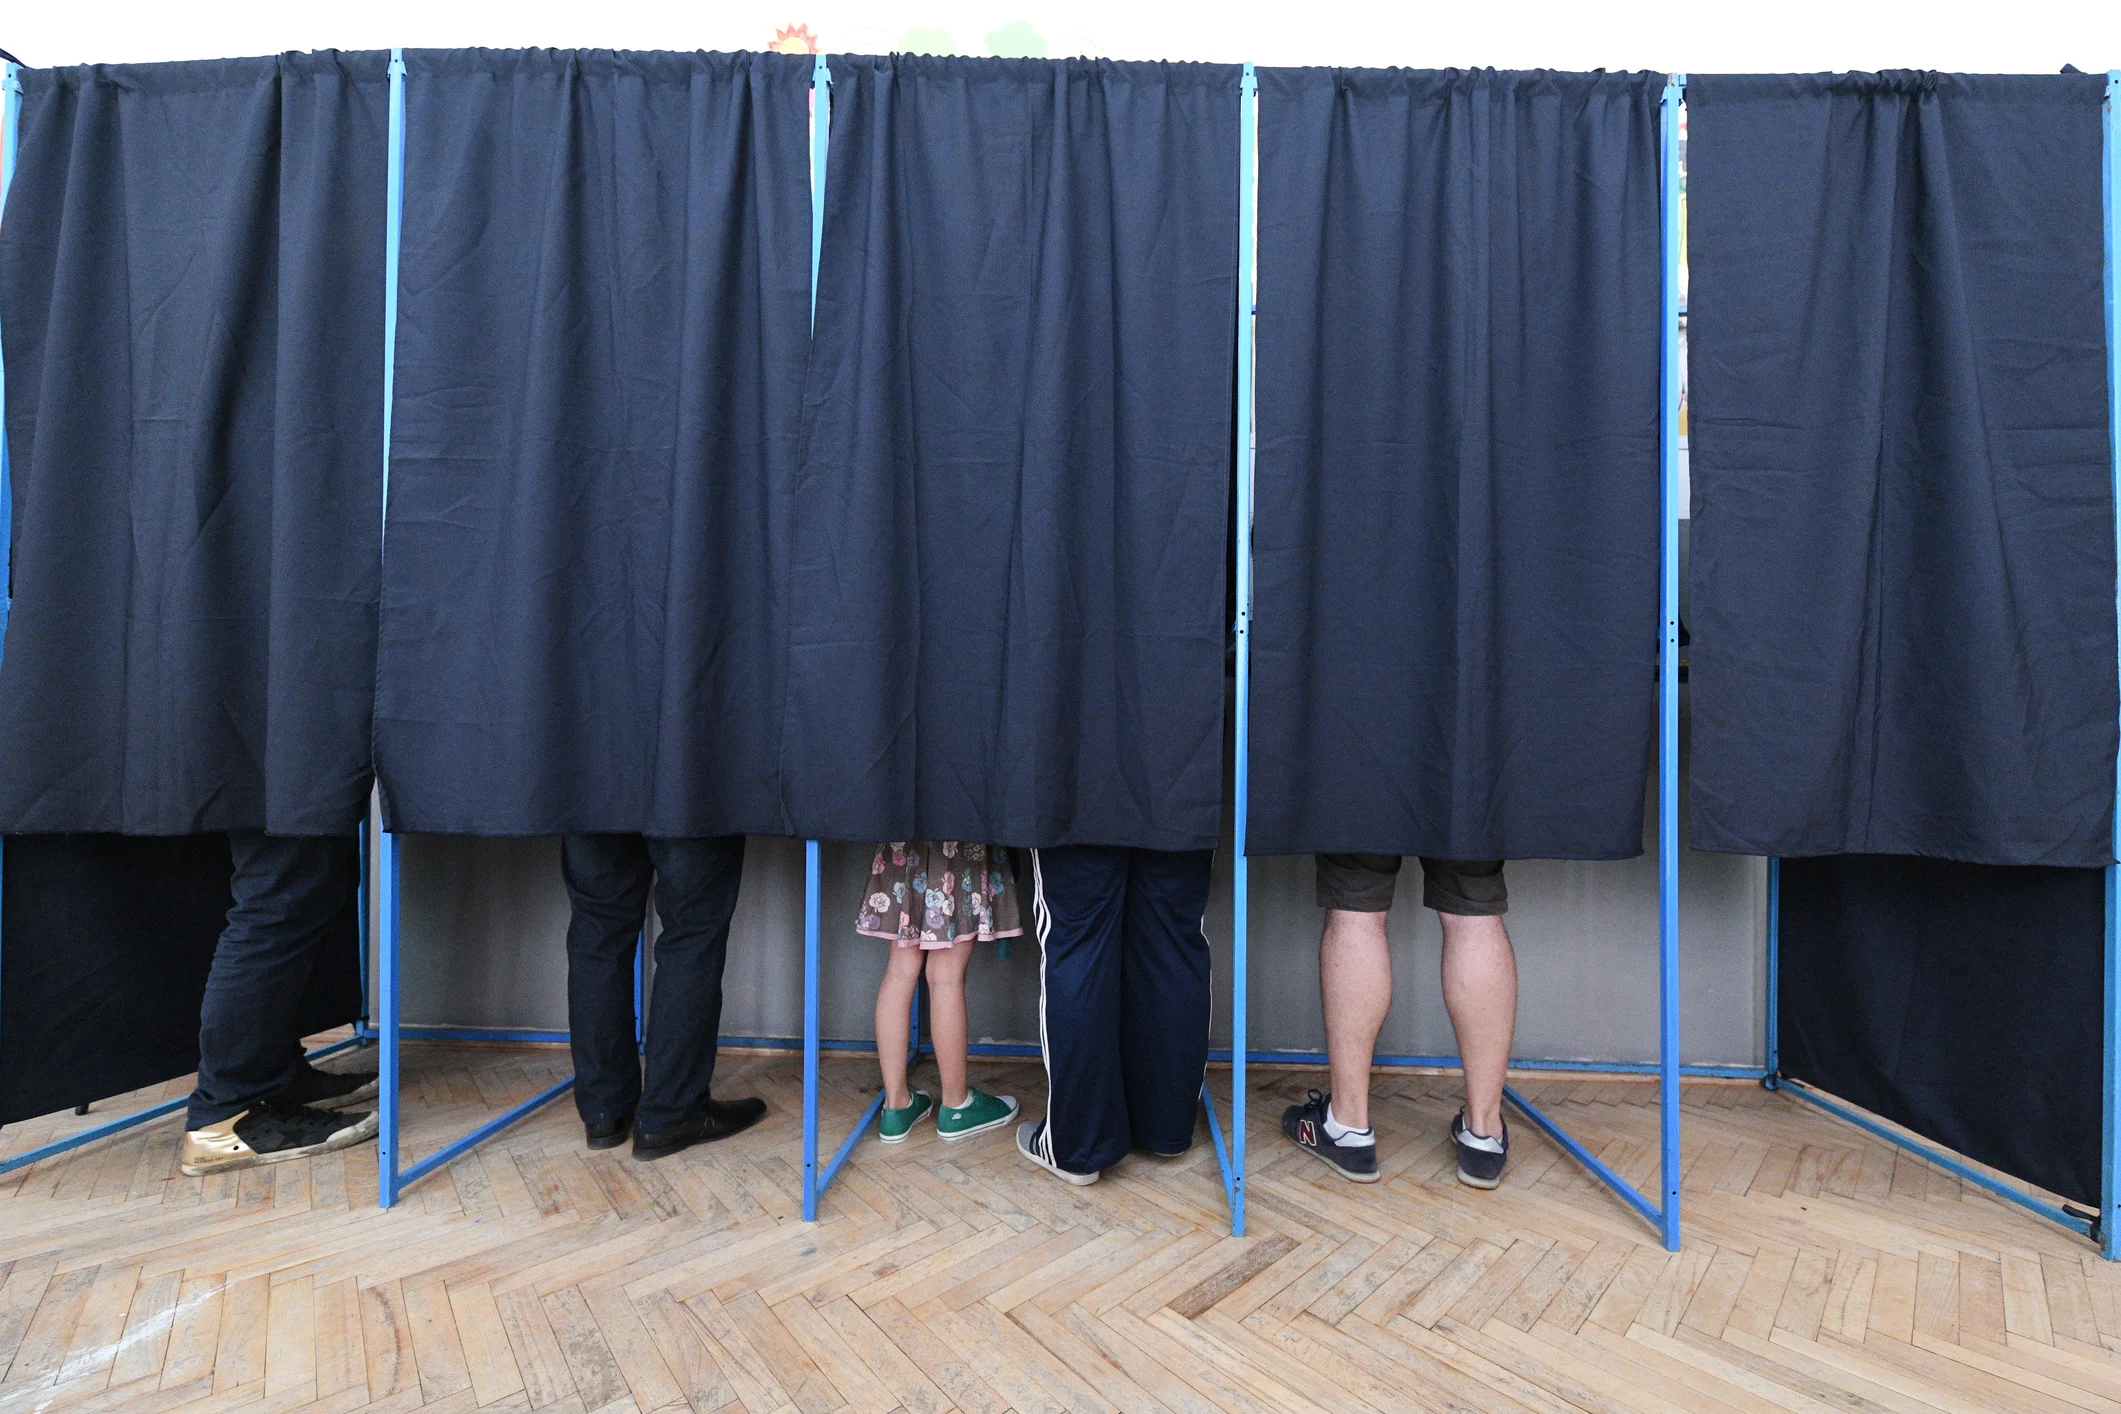 Alegeri București: PSD și PNL merg pe liste comune pentru sectoare